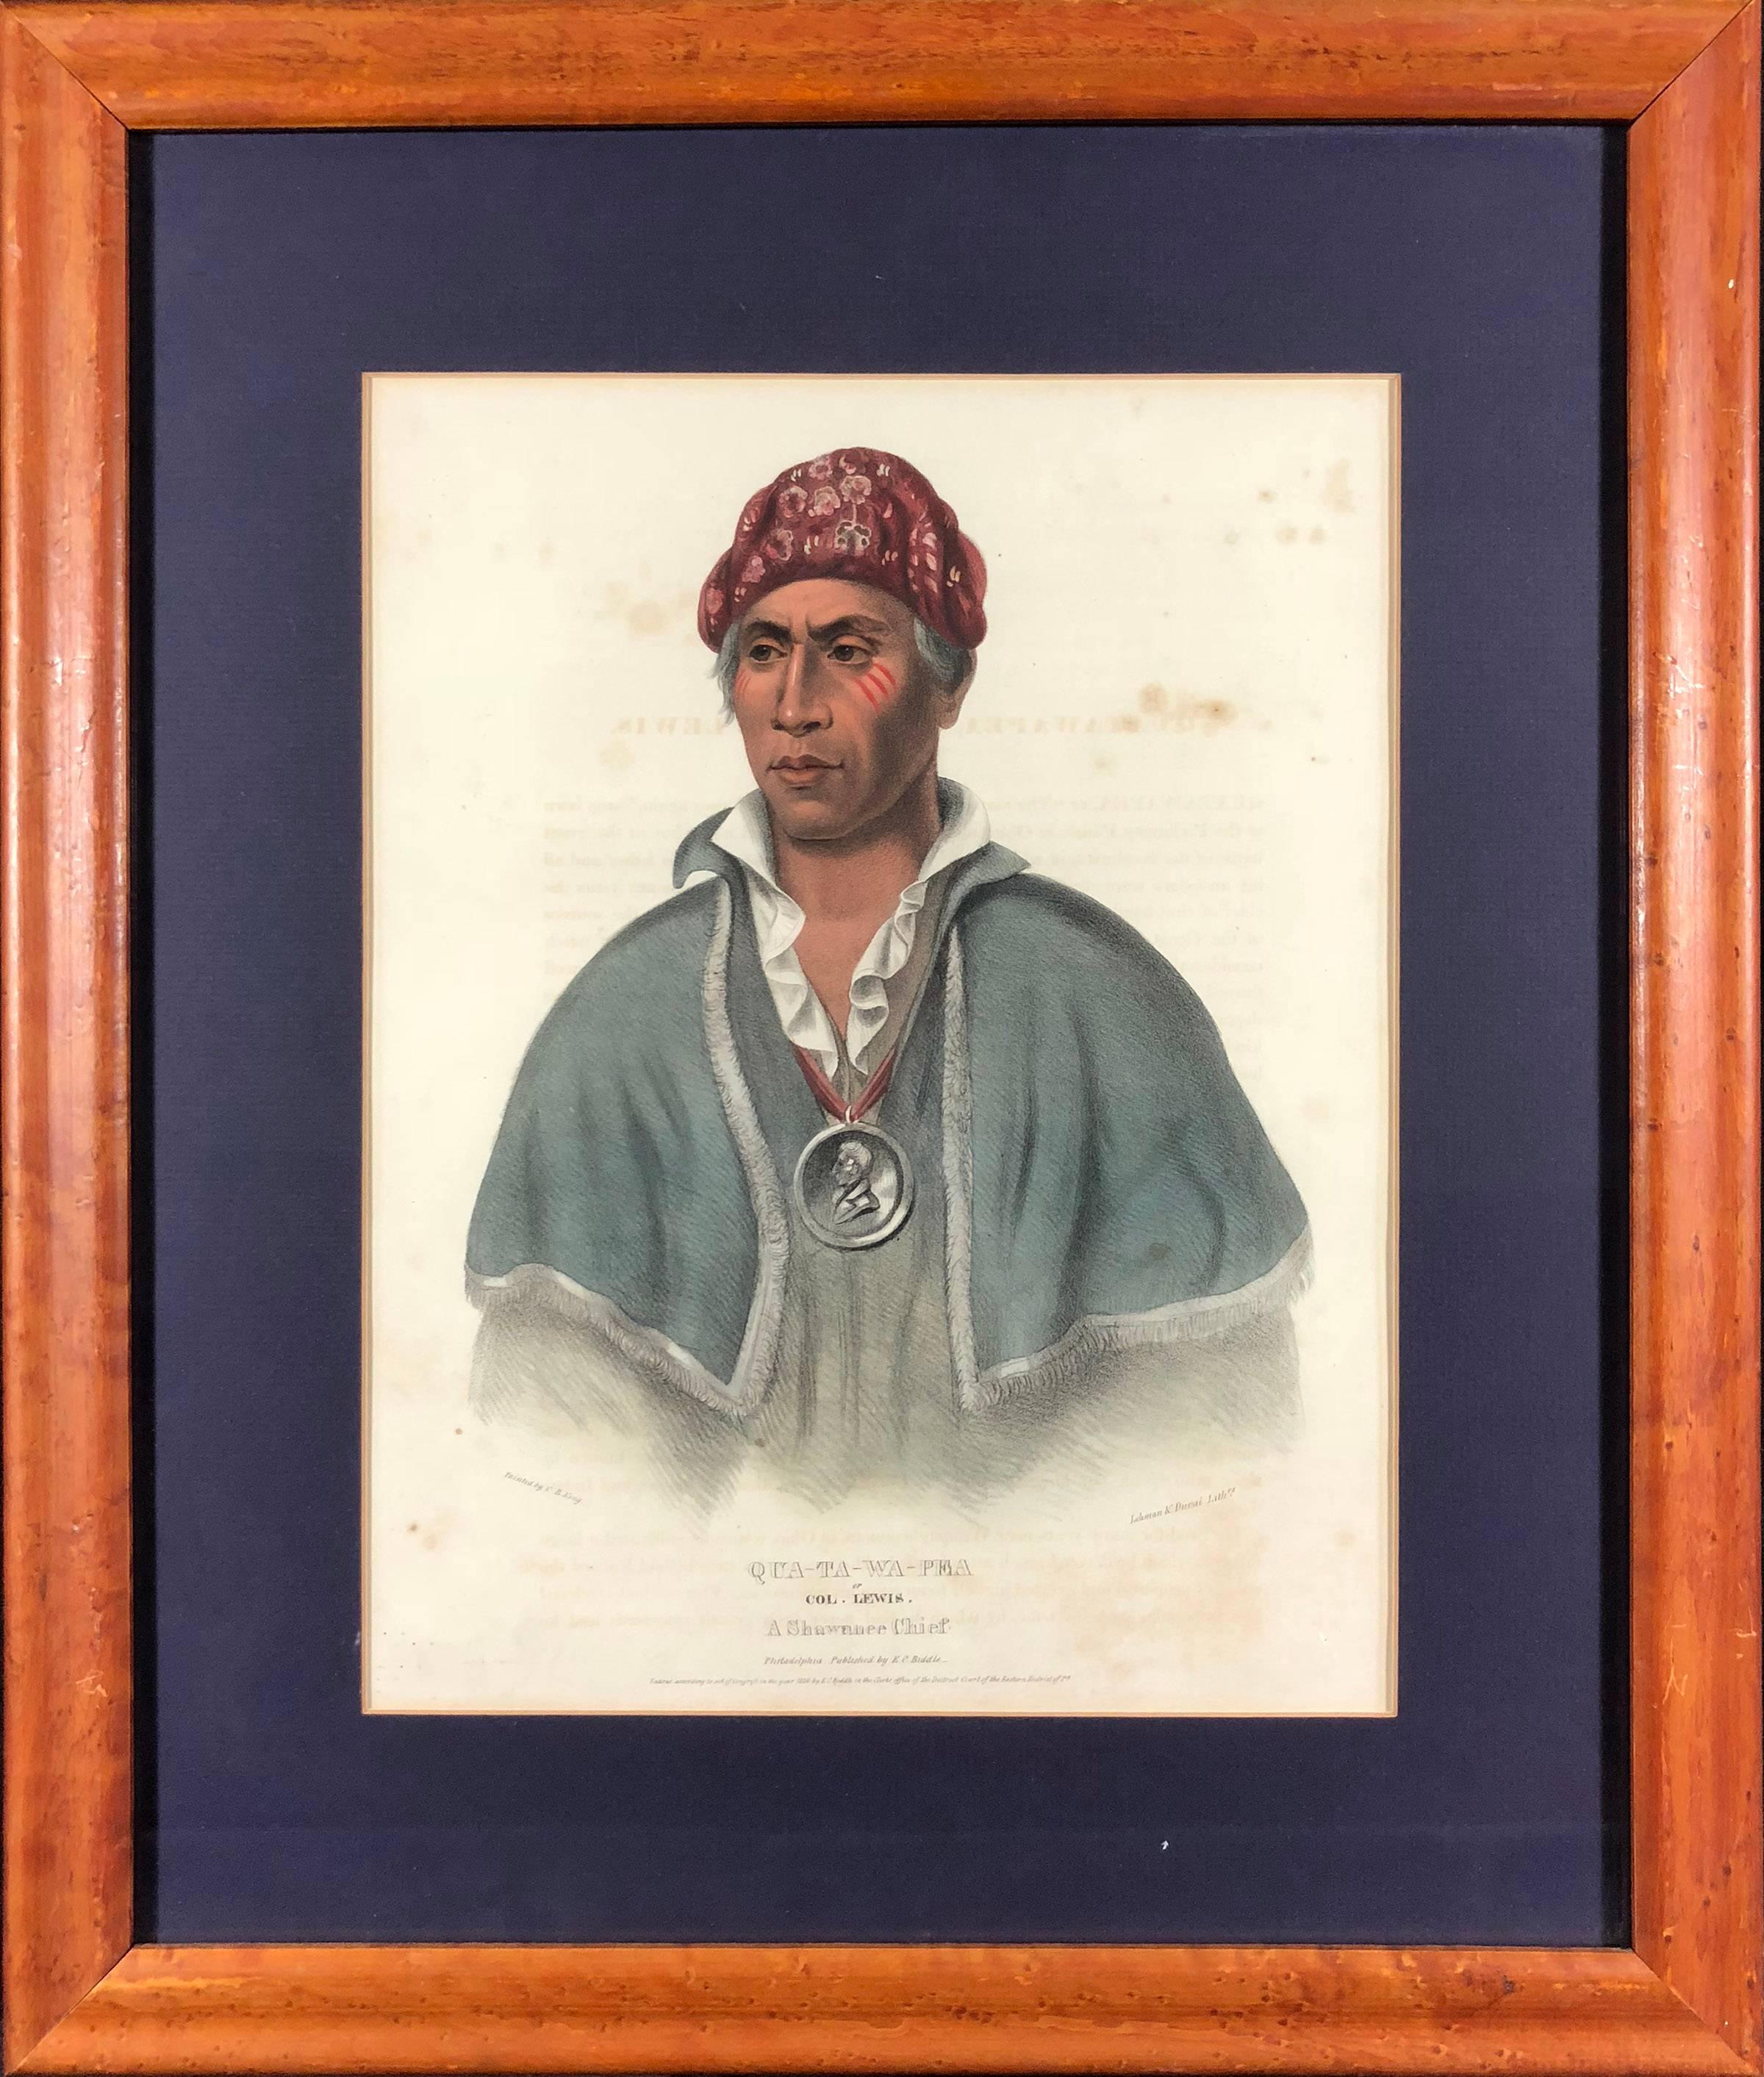 Qua-Ta-Wa-Pea or Col. Lewis. A Shawnee Chief. - Print by McKenney & Hall